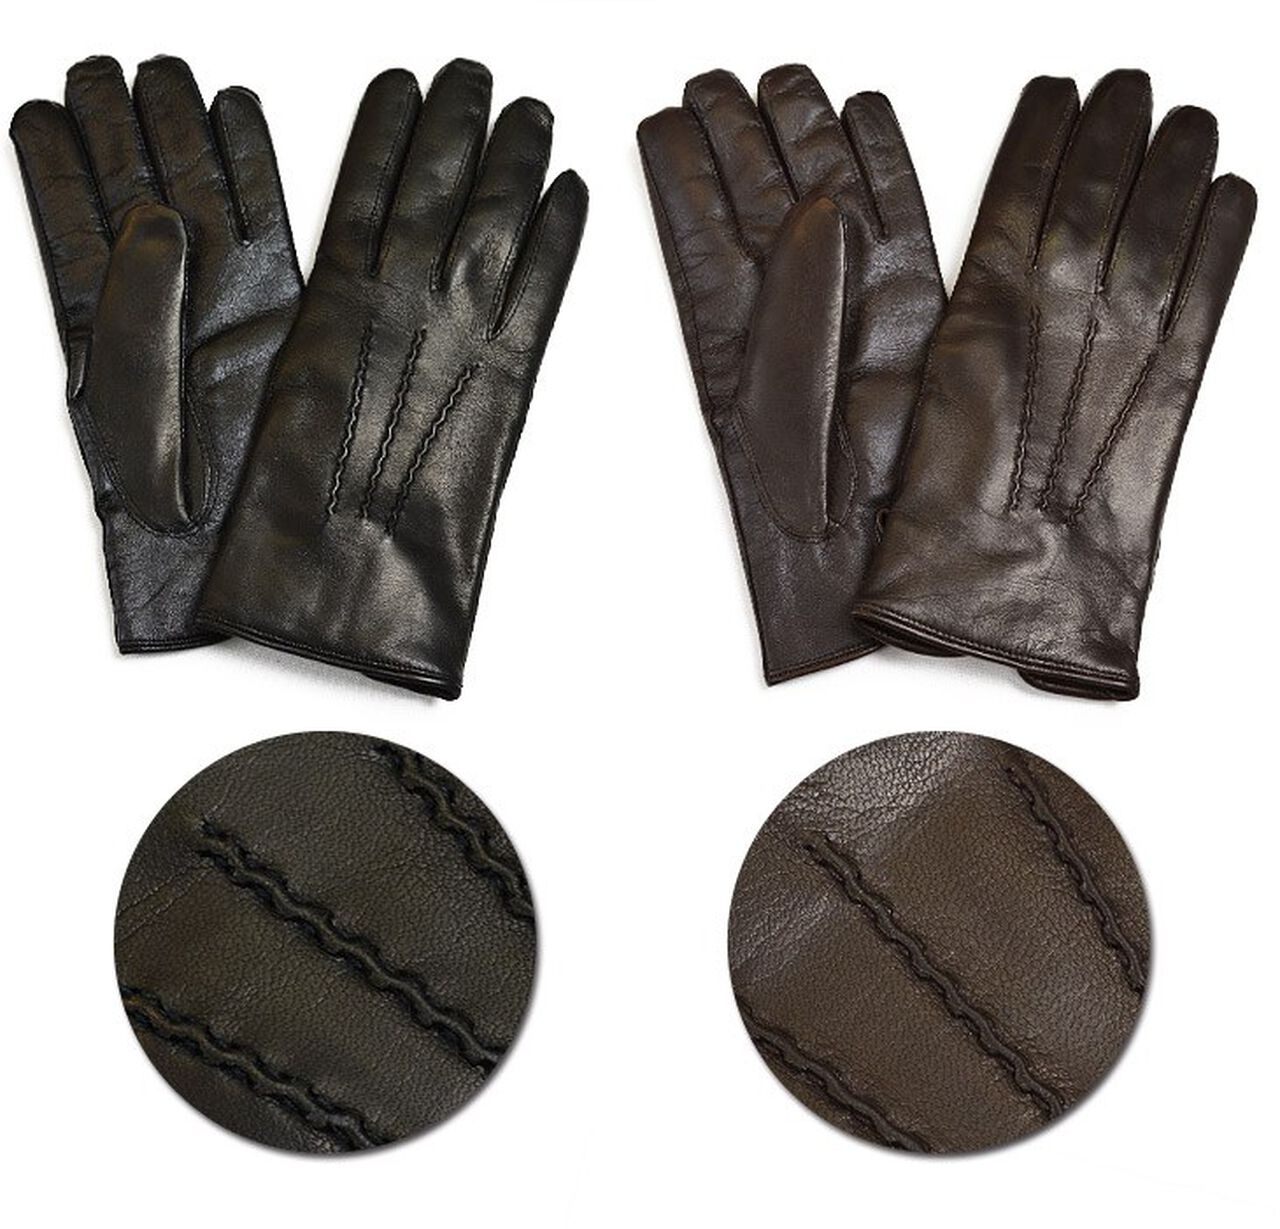 78PK-SM Smartphone Lamb Leather Gloves,Black, large image number 5